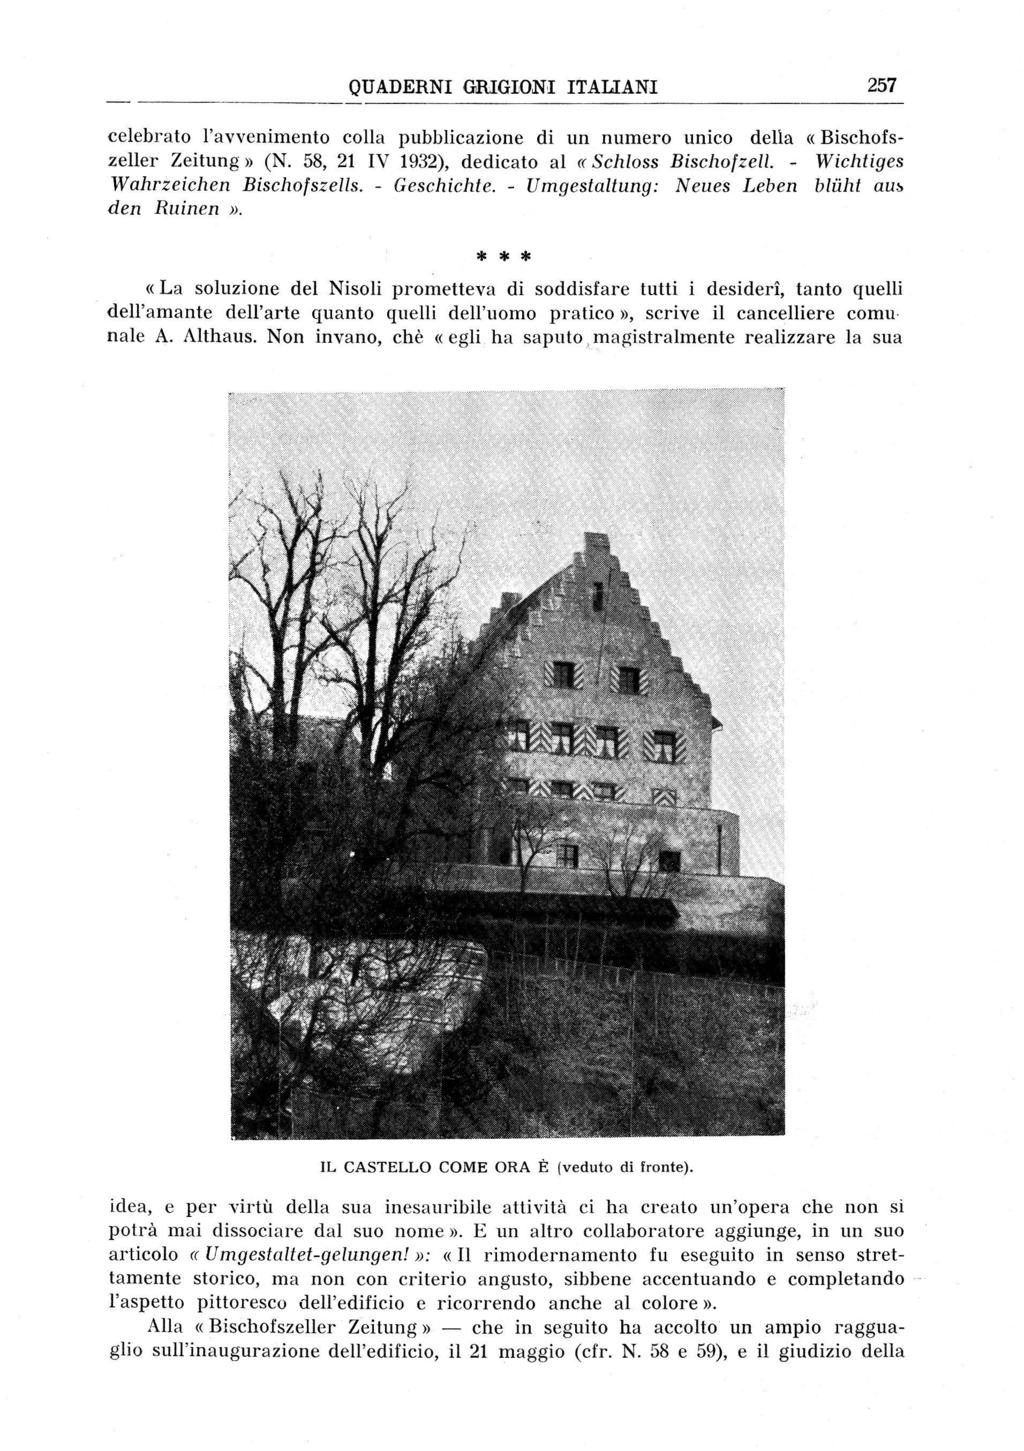 ' QUADERNI GRIGIONI ITALIANI 257 celebrato l'avvenimento colla pubblicazione di un numero unico della «Bischofszeller Zeitung» (N. 58, 21 IV 1932), dedicato al «Schloss Bischofzell.